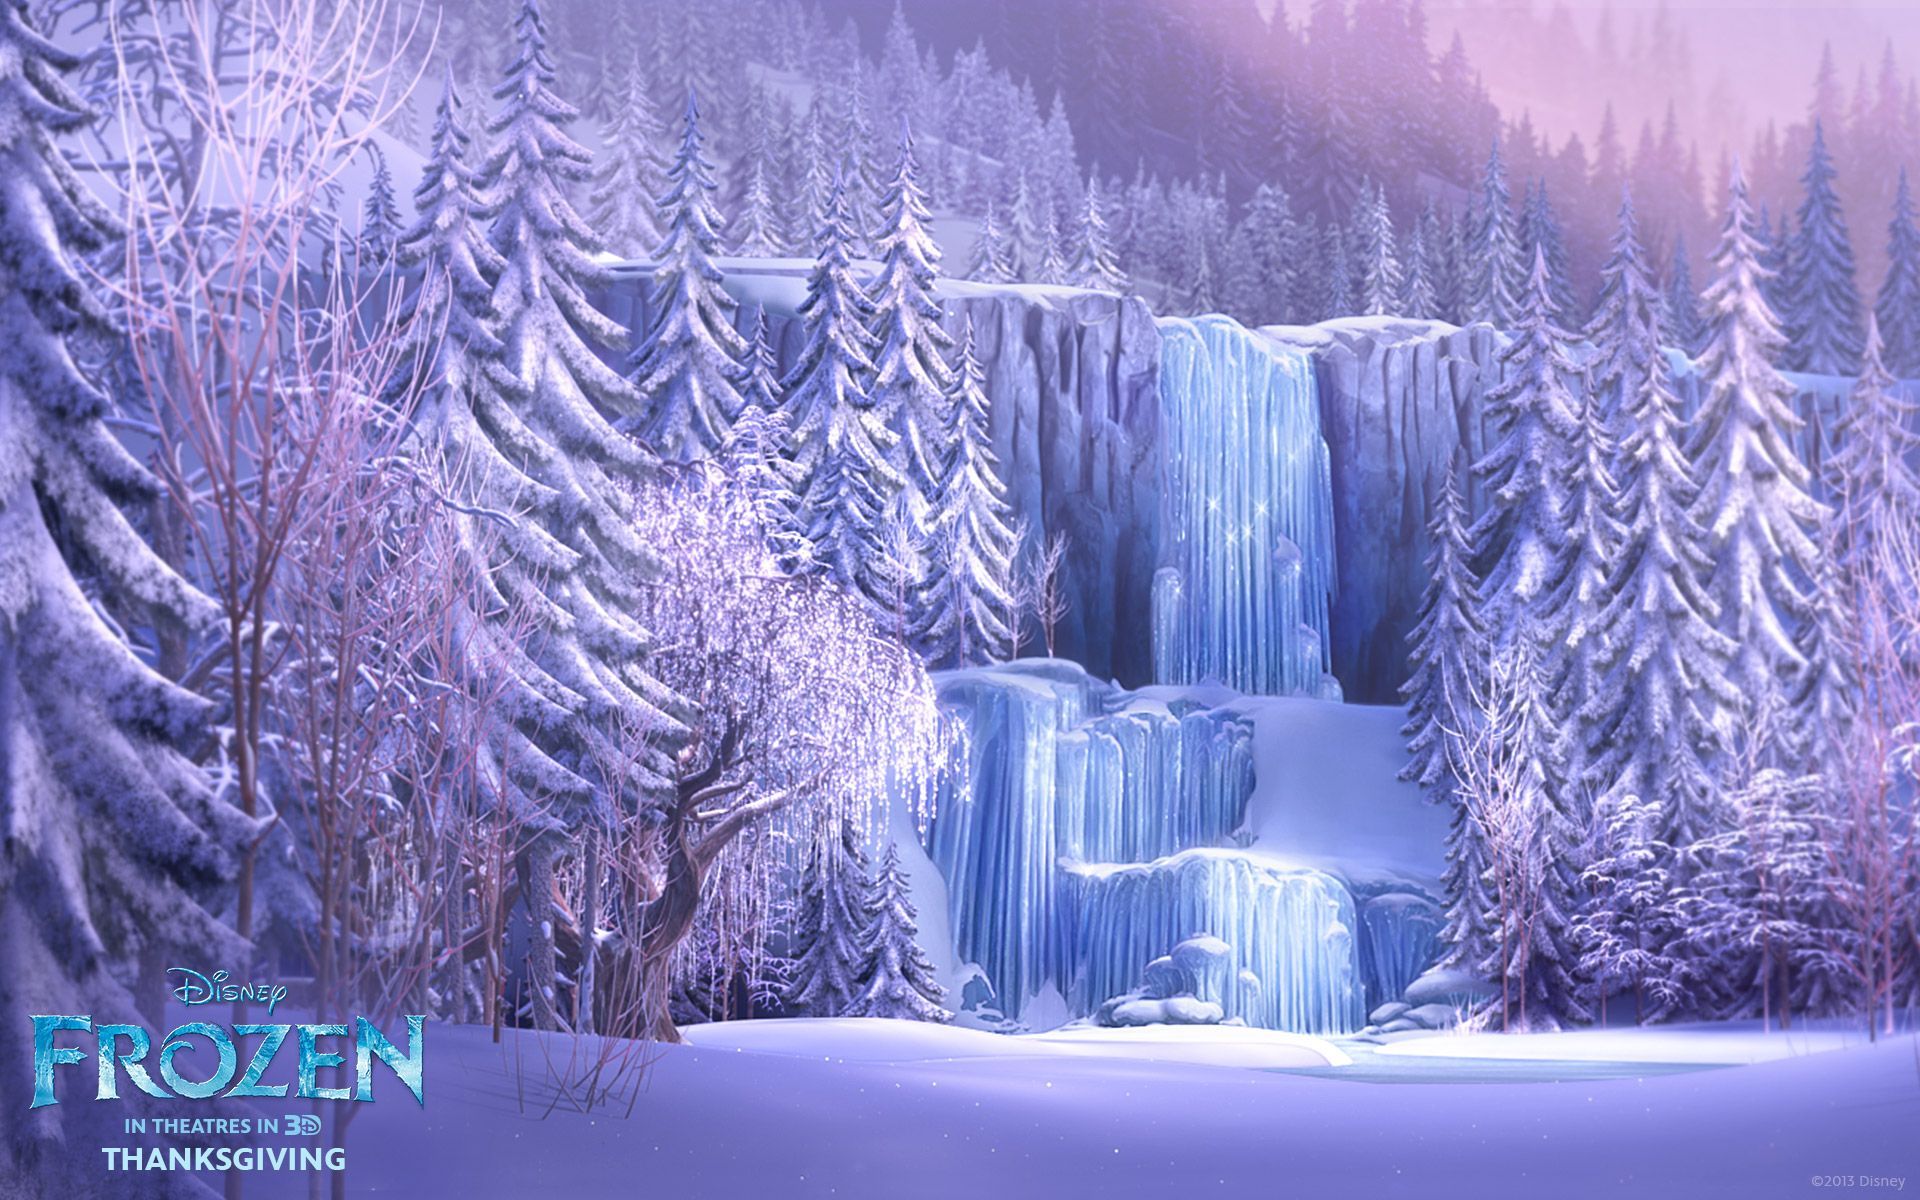 Frozen Waterfall from Disney's Frozen Desktop Wallpaper. Frozen wallpaper, Frozen background, Frozen movie